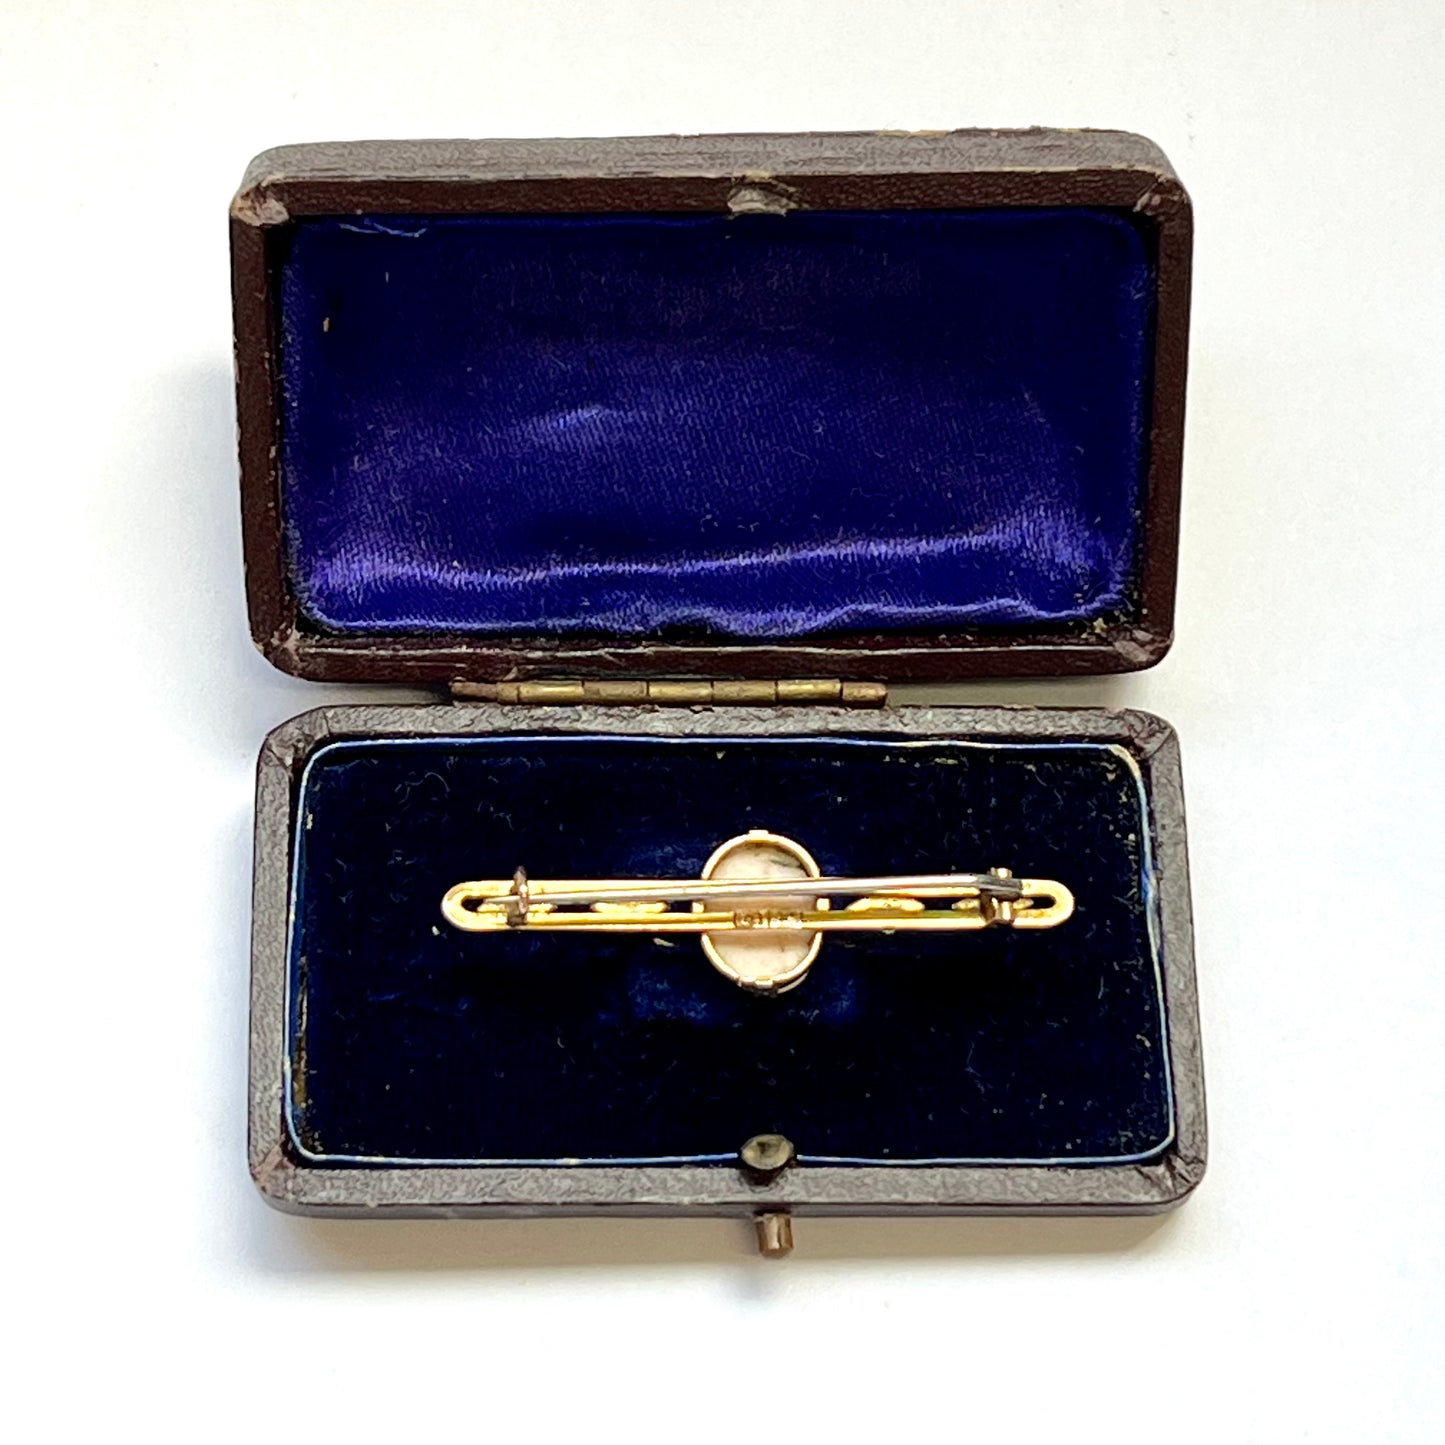 19 世纪维多利亚风格的 9ct 黄金和浮雕条形胸针，配以珍珠，可能是澳大利亚产